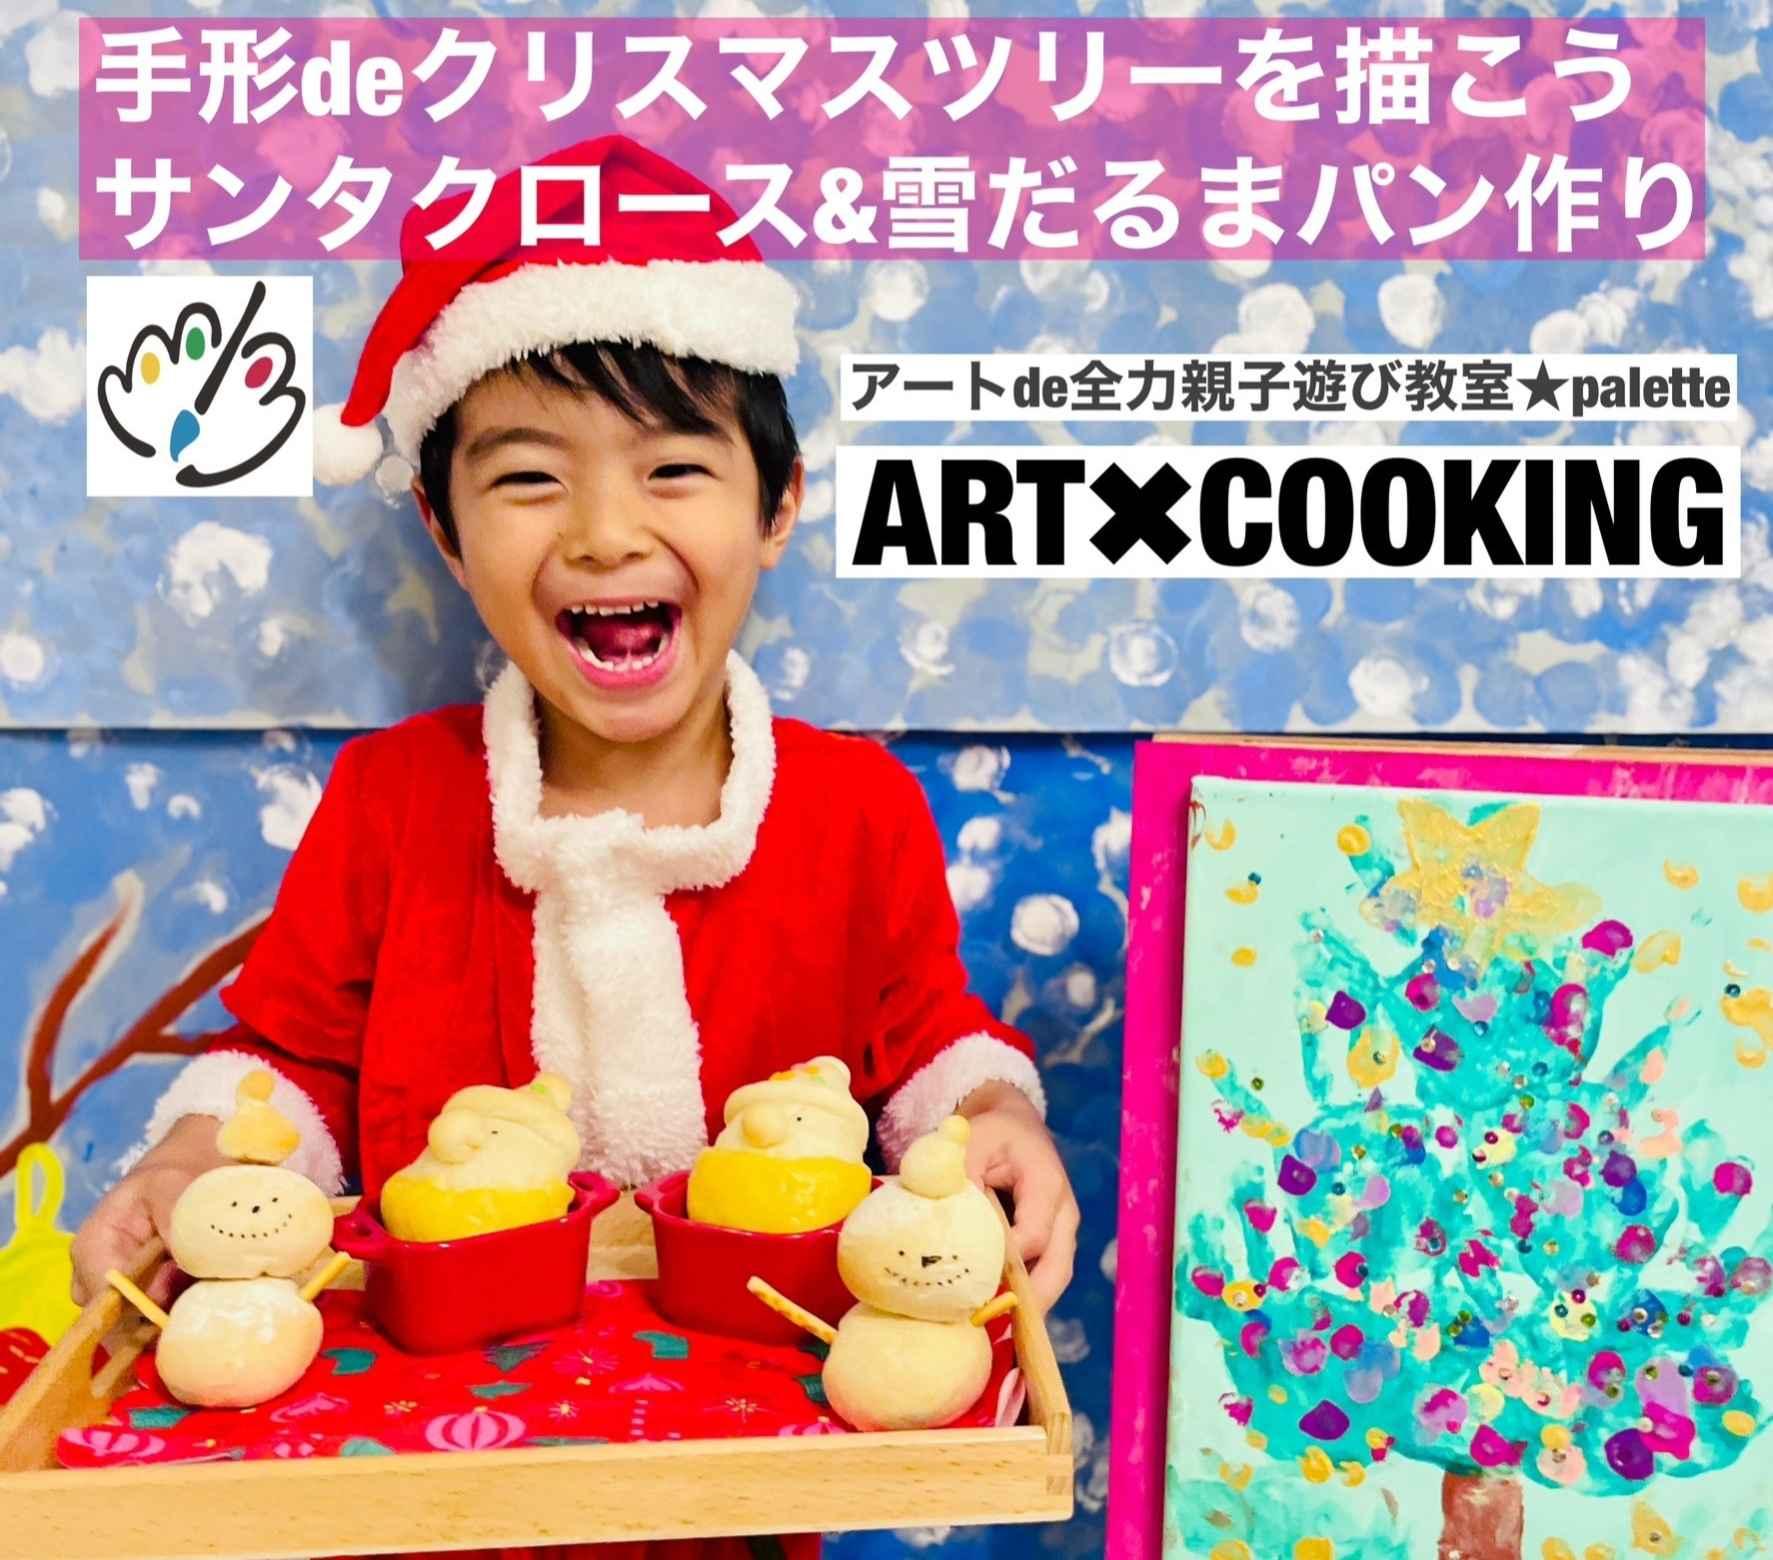 親子クリスマスコラボレッスン☆クリスマスパン作り、クリスマスアート製作